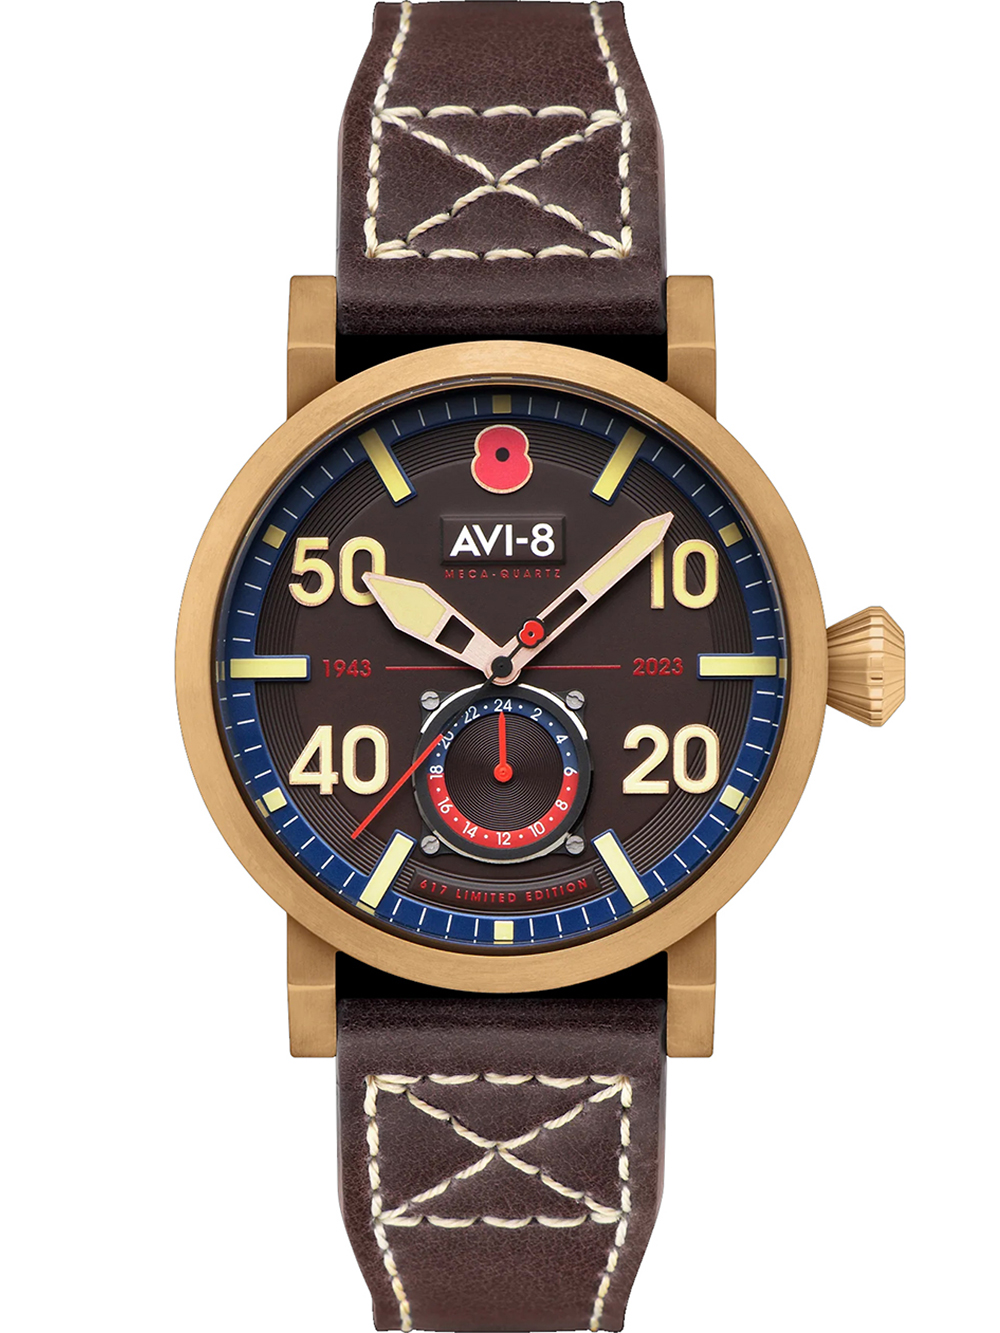 Pánské hodinky AVI-8 AV-4108-RBL-05 Mens Watch Dambuster Limited 80th Anniversary Royal British Legion